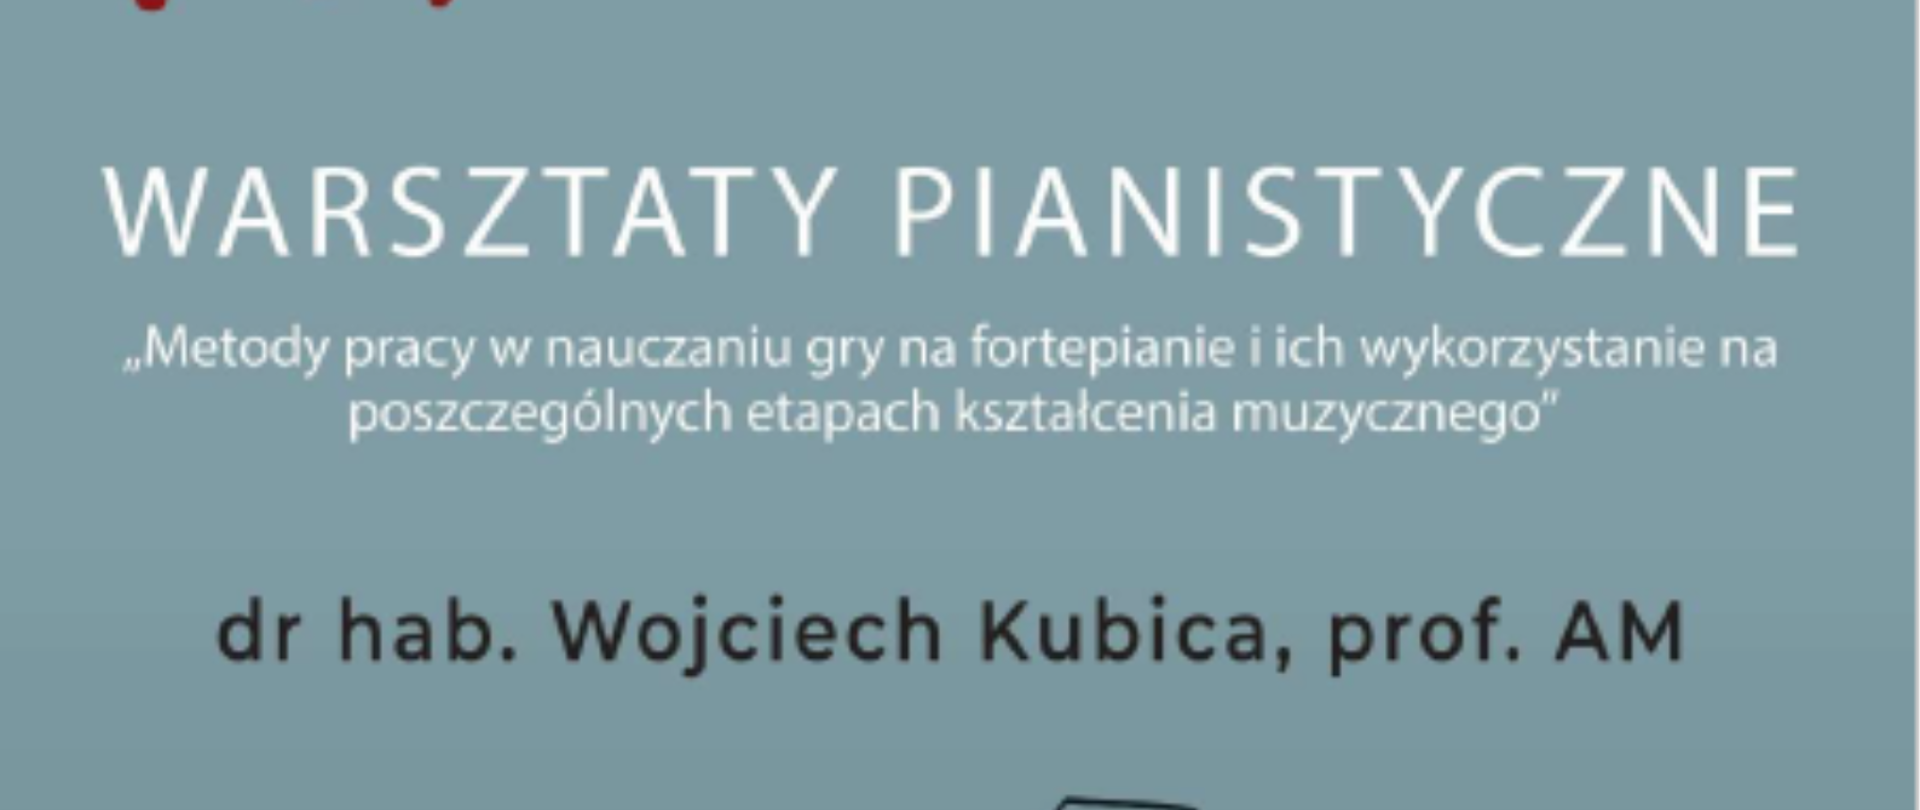 Plakat składa się z ciemnoszarego tła. W lewym górnym rogu logo PSM w Pabianicach, w dolnej części czarna rycina fortepianu.
W centralnej części informacja i warsztatach i nazwisko prowadzącego.